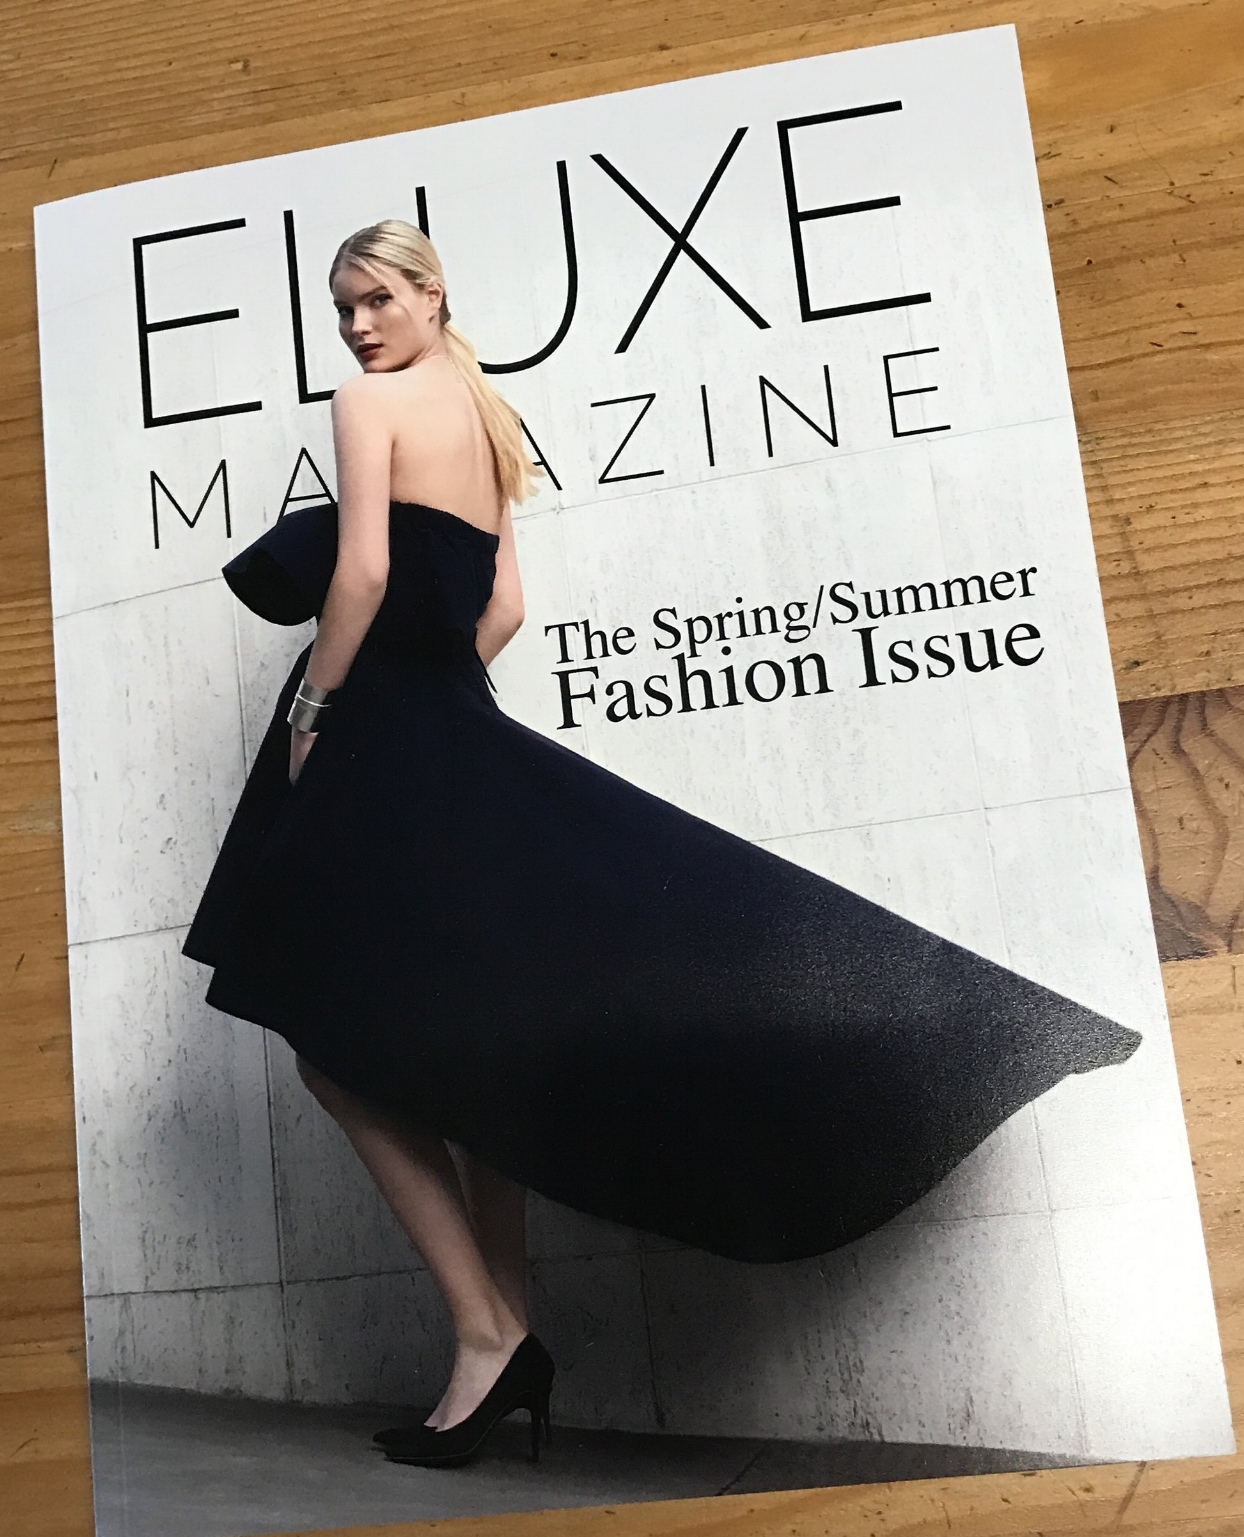 Eluxe Magazine Print-1.jpg